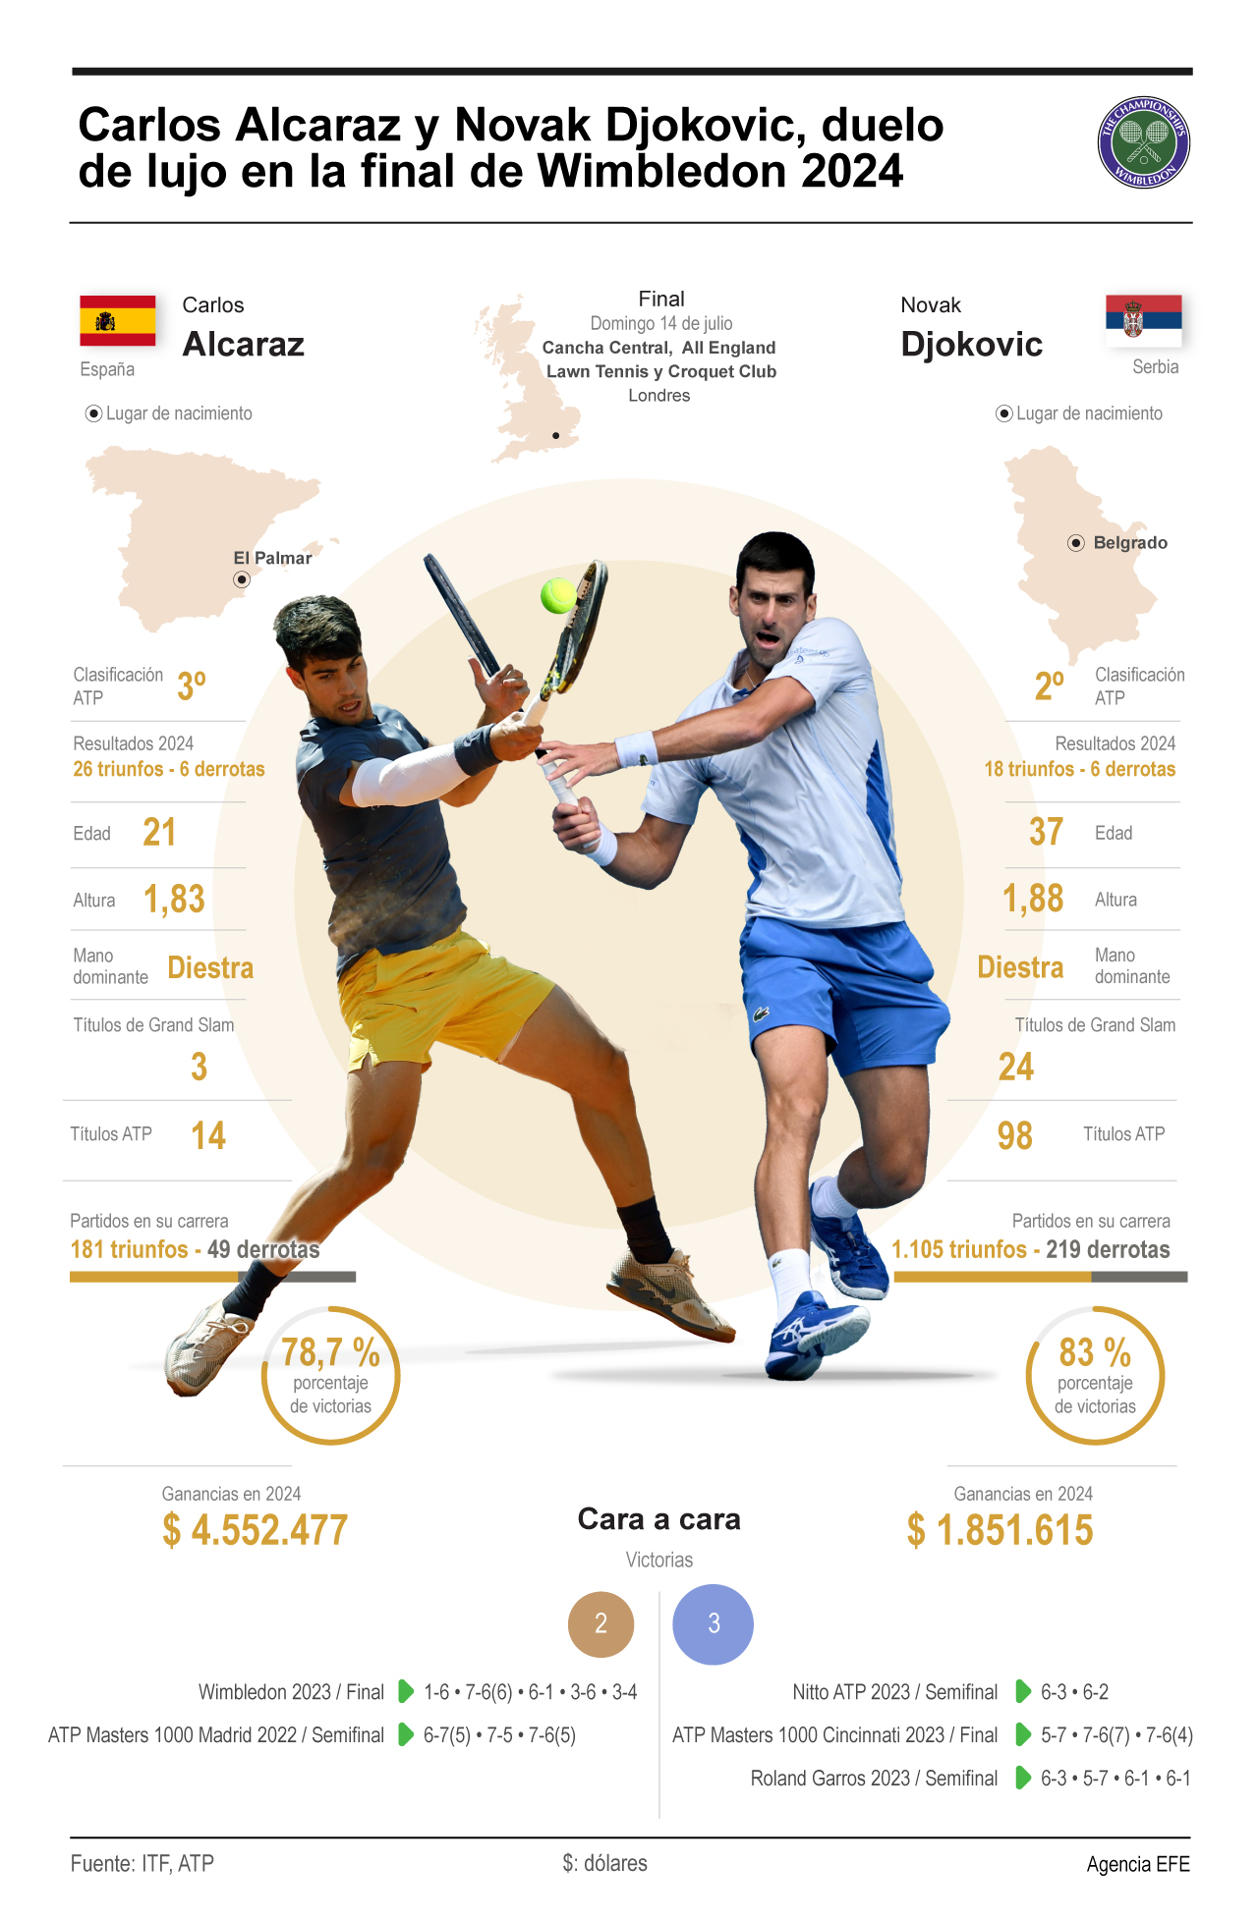 Previa de la final masculina de Wimbledon 2024, tercer Grand Slam del año, entre Carlos Alcaraz y Novak Djokovic que se disputará el 14 de julio.